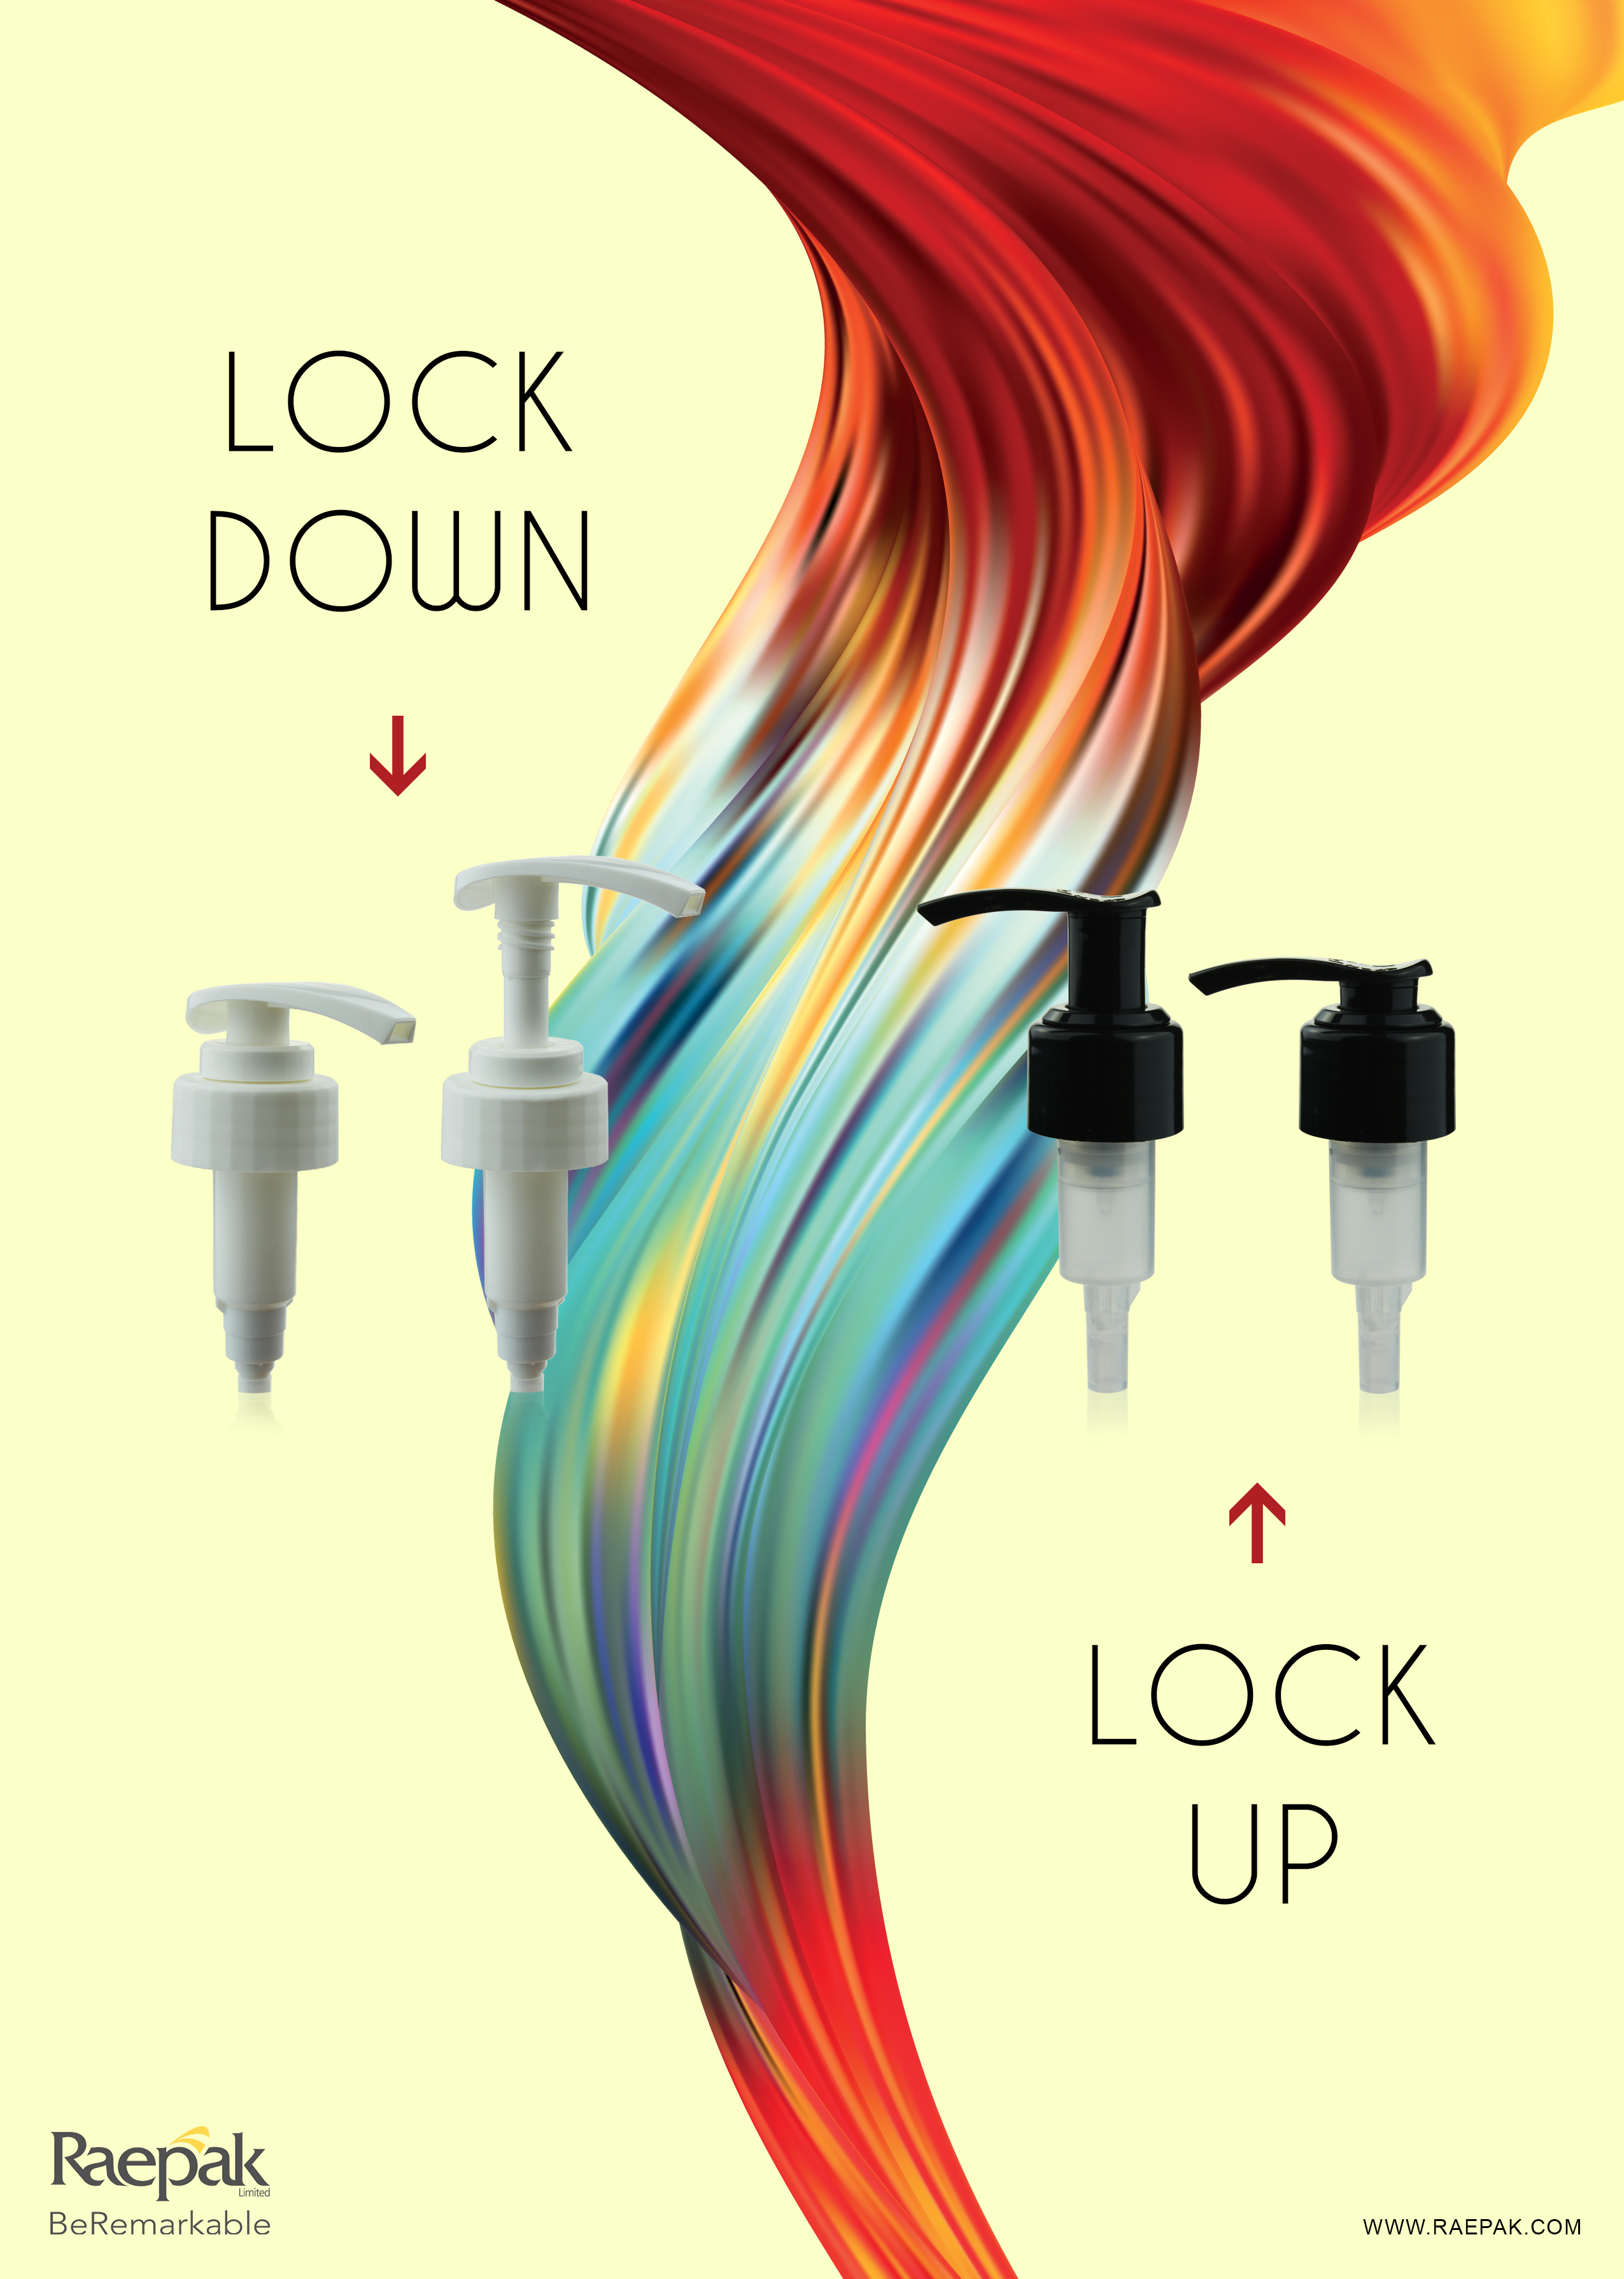 lock-up-lock-down-pumps